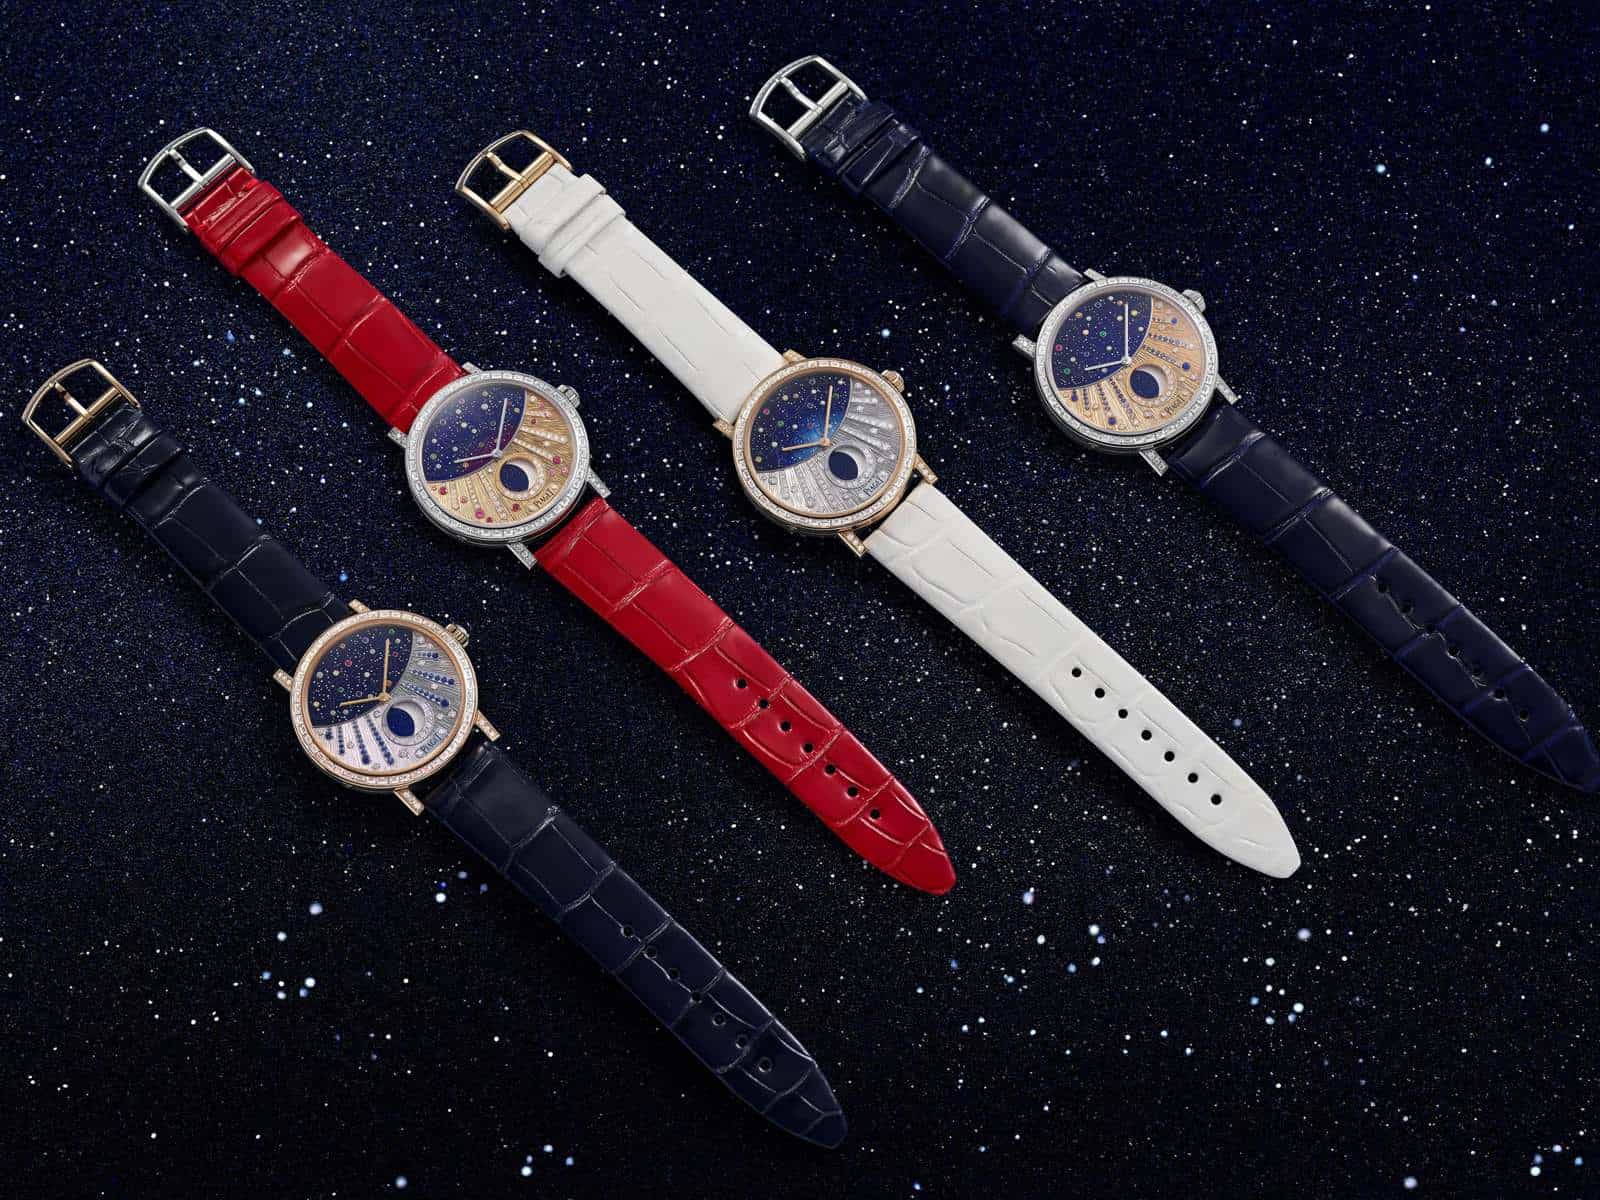 Vier verschiedene Piaget Metiers d'Art Modelle der superflachen Altiplano Uhr mit Mondphase